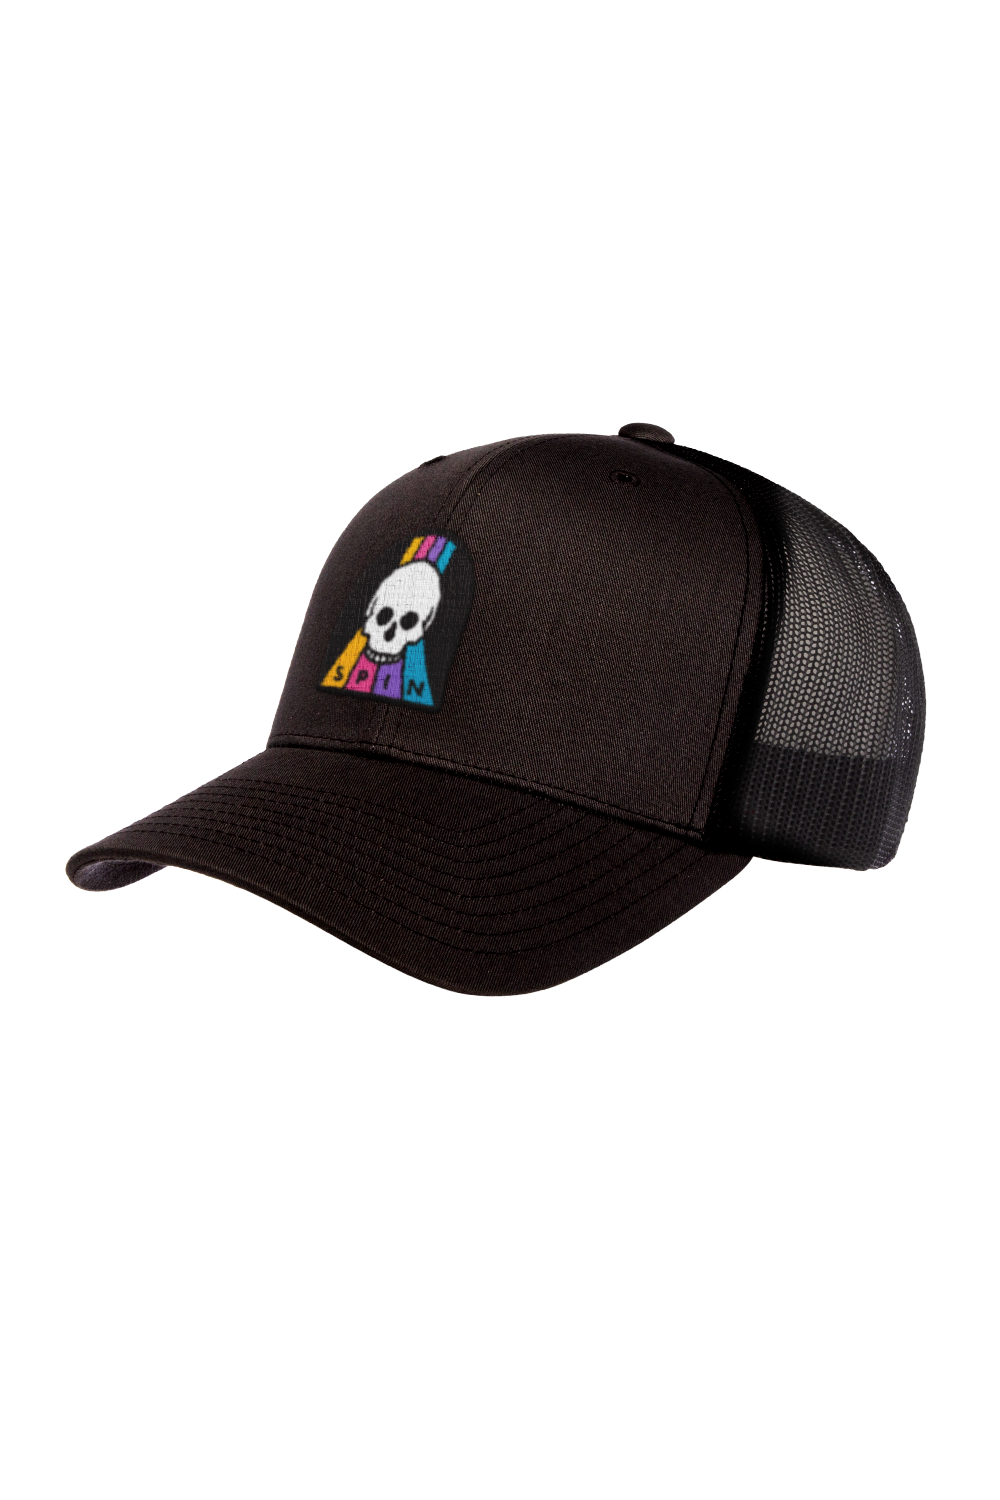 Skull Trucker Hat